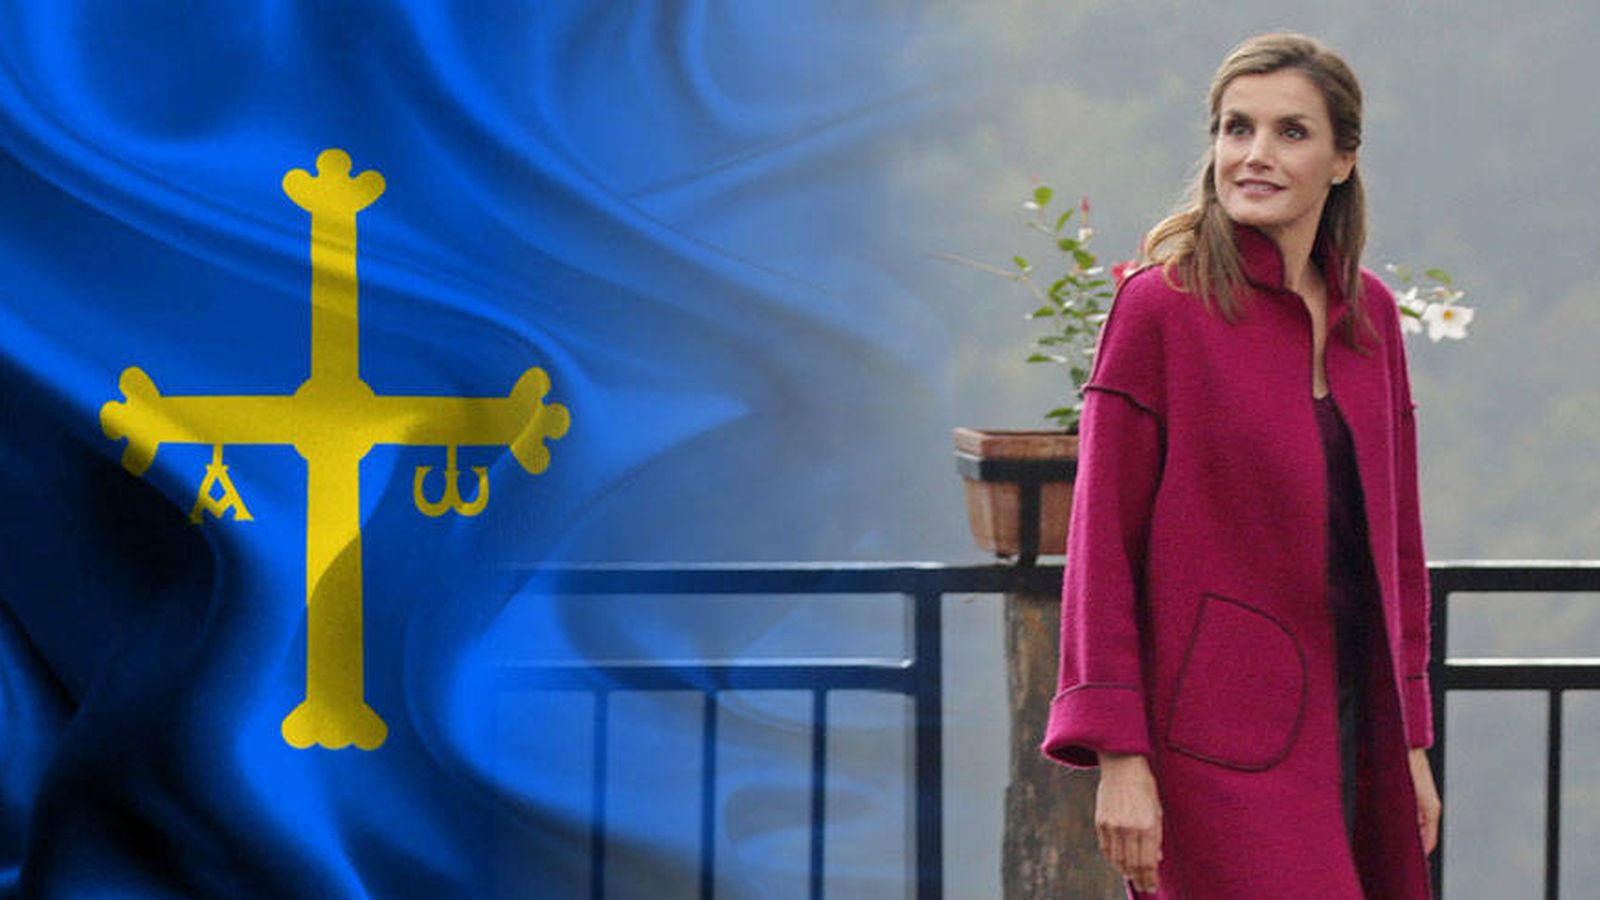 Foto: La Reina de España junto a la bandera de Asturias